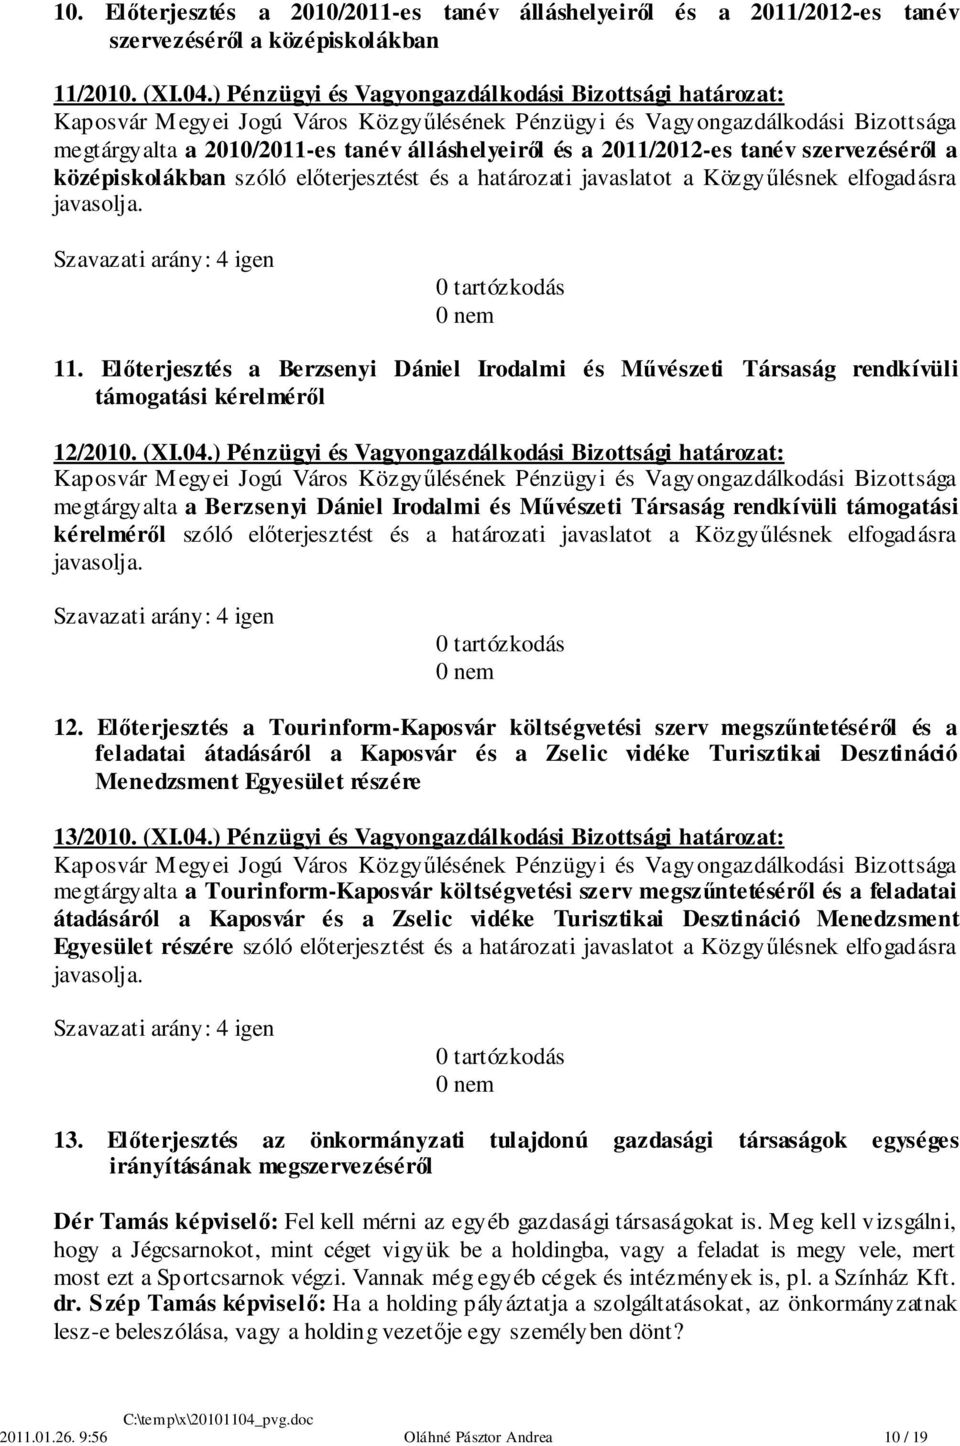 javaslatot a Közgyűlésnek elfogadásra javasolja. 11. Előterjesztés a Berzsenyi Dániel Irodalmi és Művészeti Társaság rendkívüli támogatási kérelméről 12/2010. (XI.04.